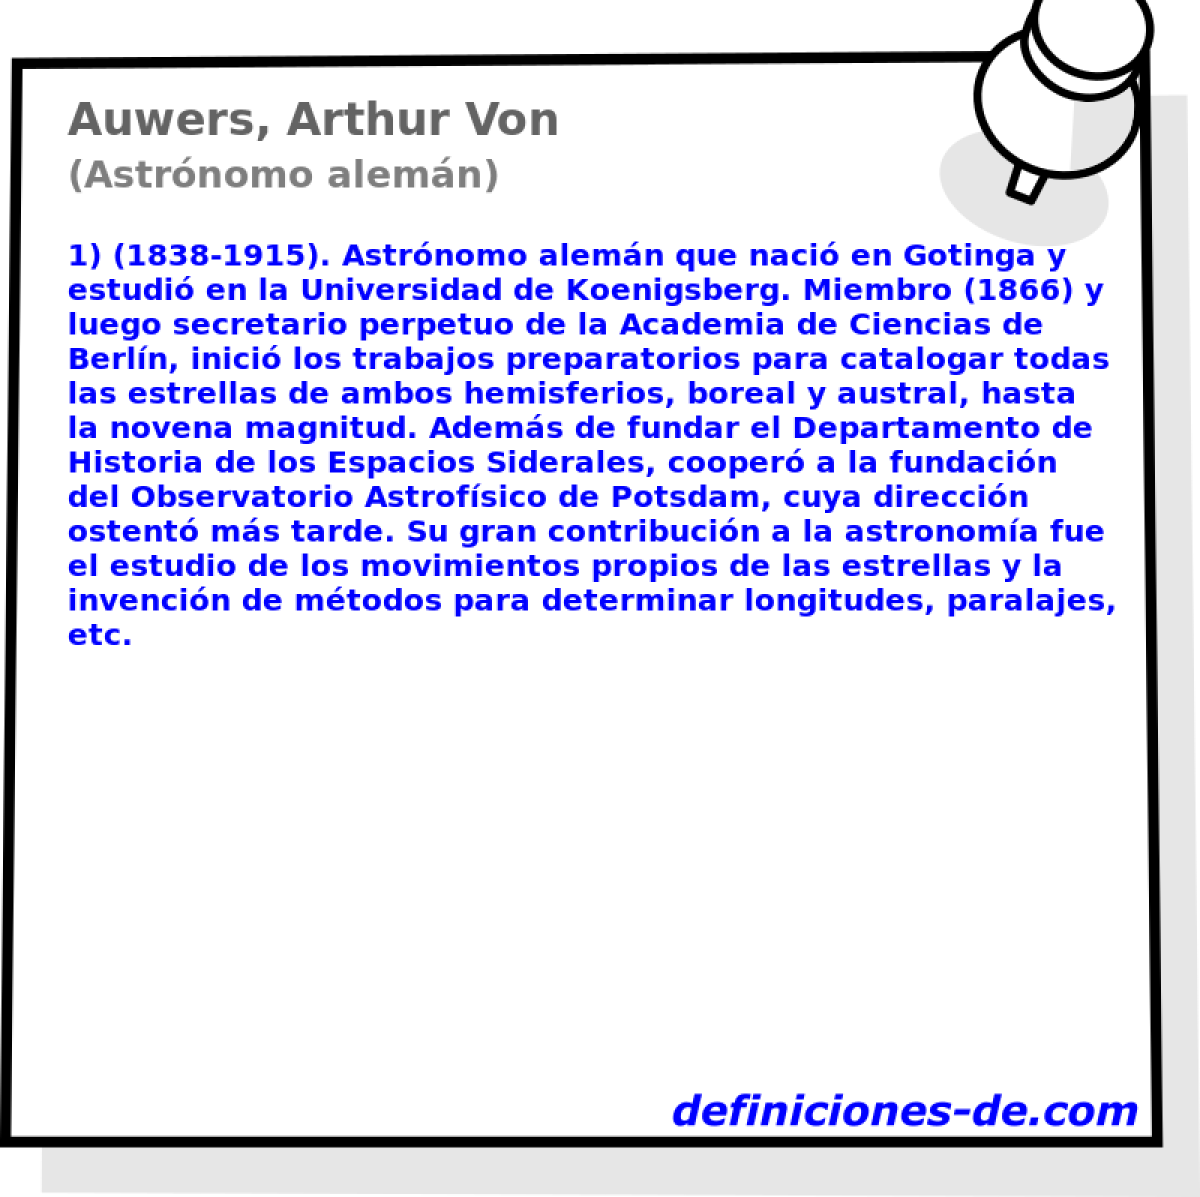 Auwers, Arthur Von (Astrnomo alemn)